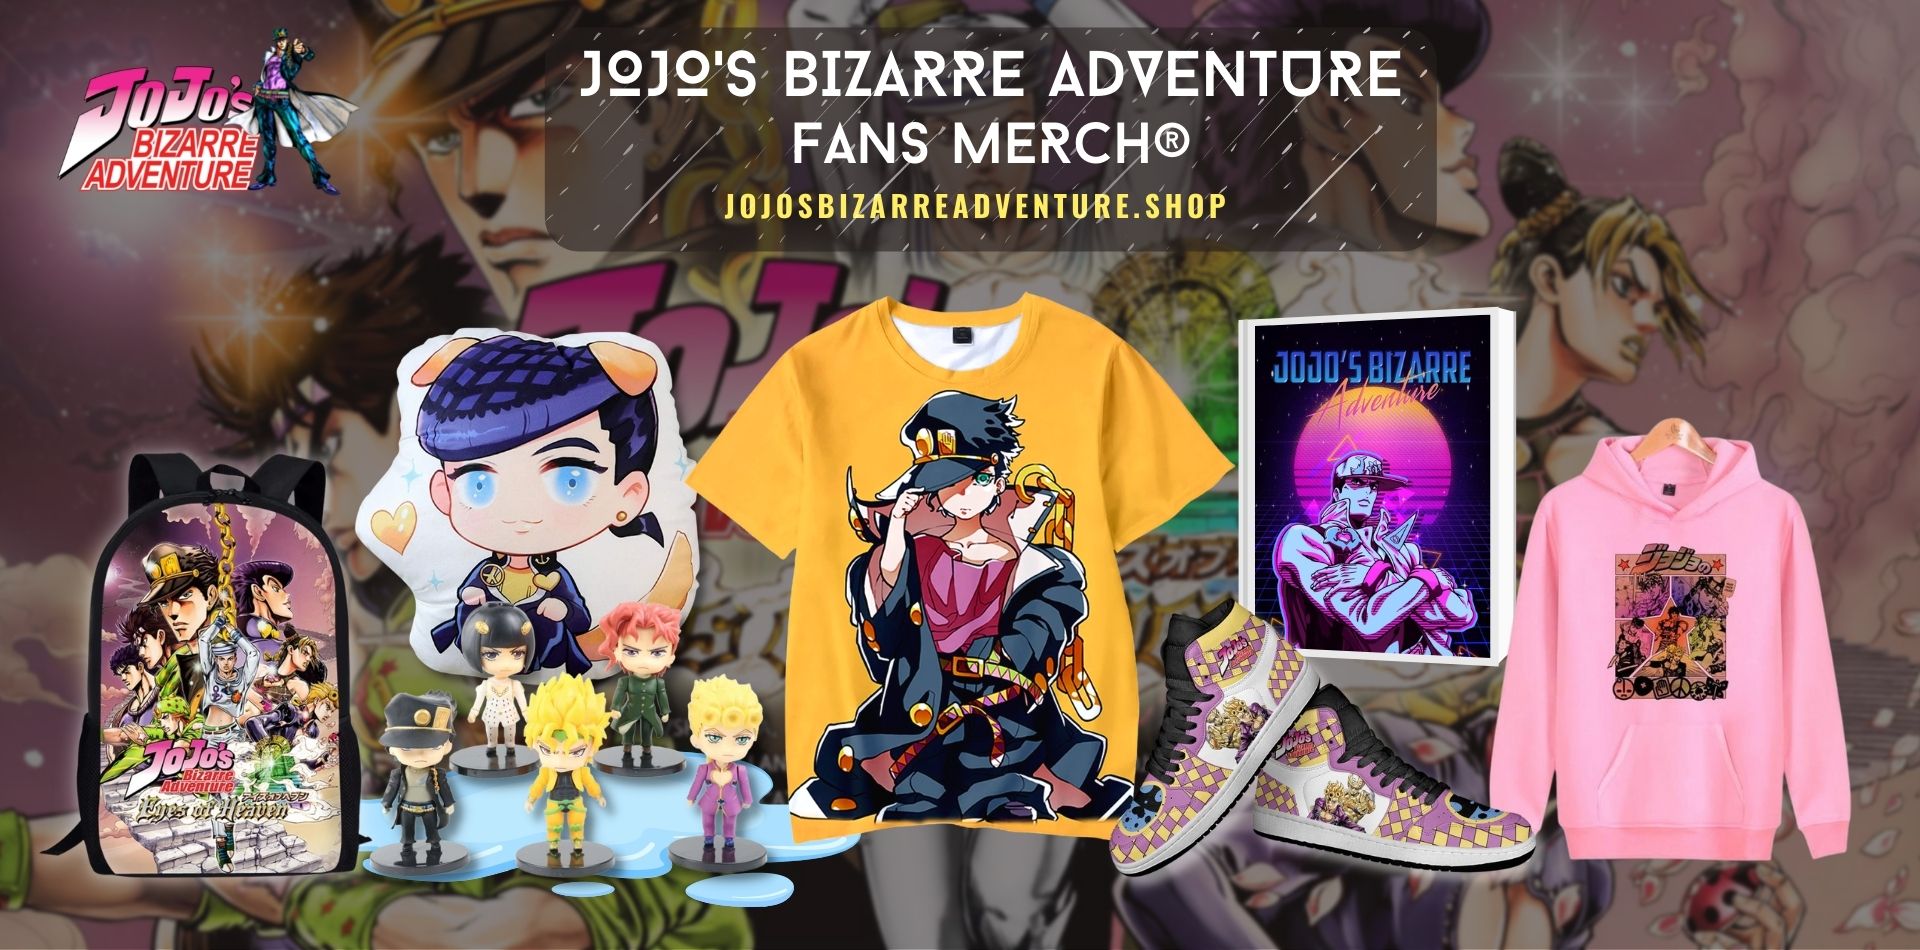 JoJos Bizarre Adventure Shop Web Banner - JoJo's Bizarre Adventure Shop